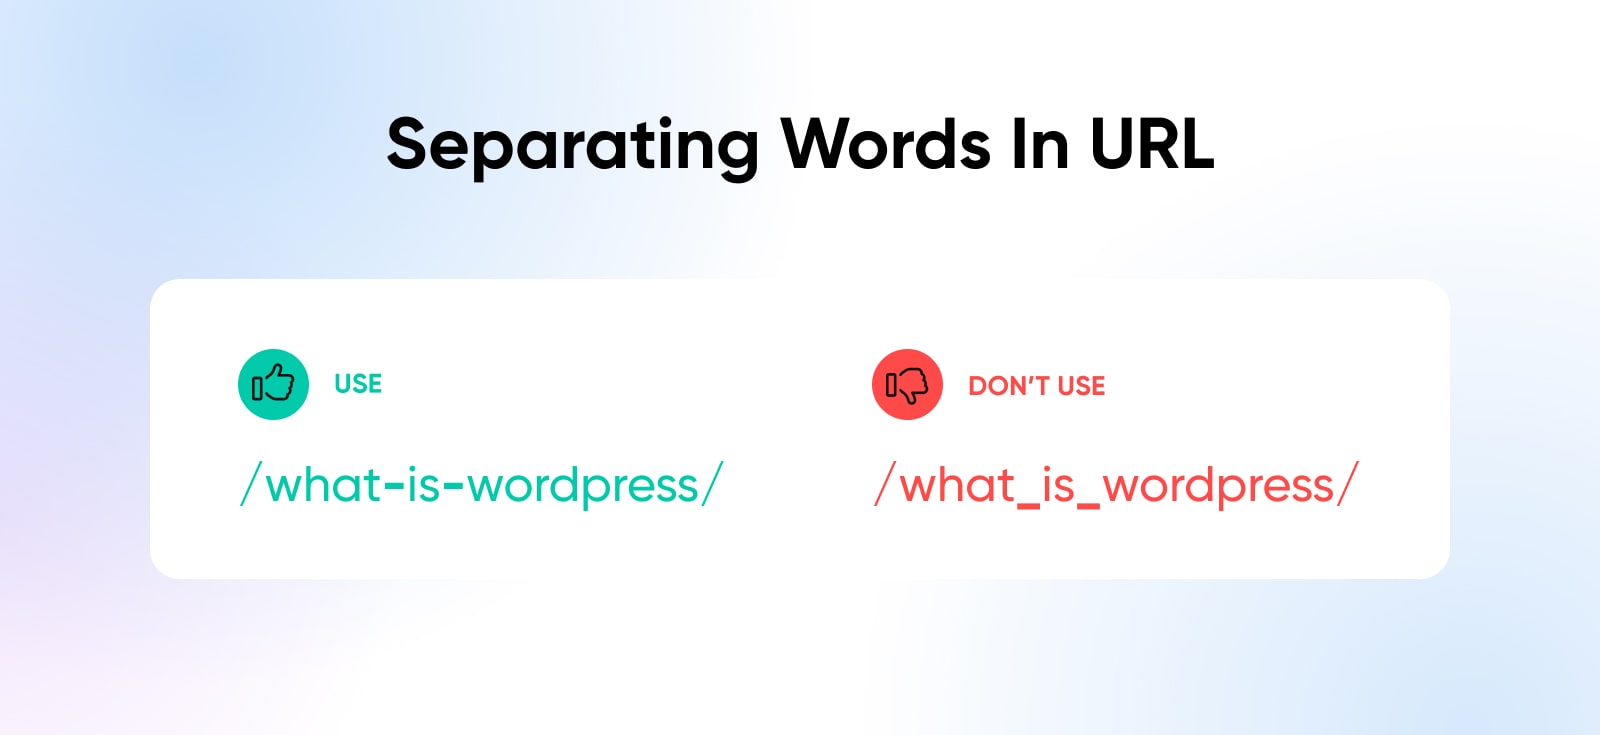 Separating Words In URL